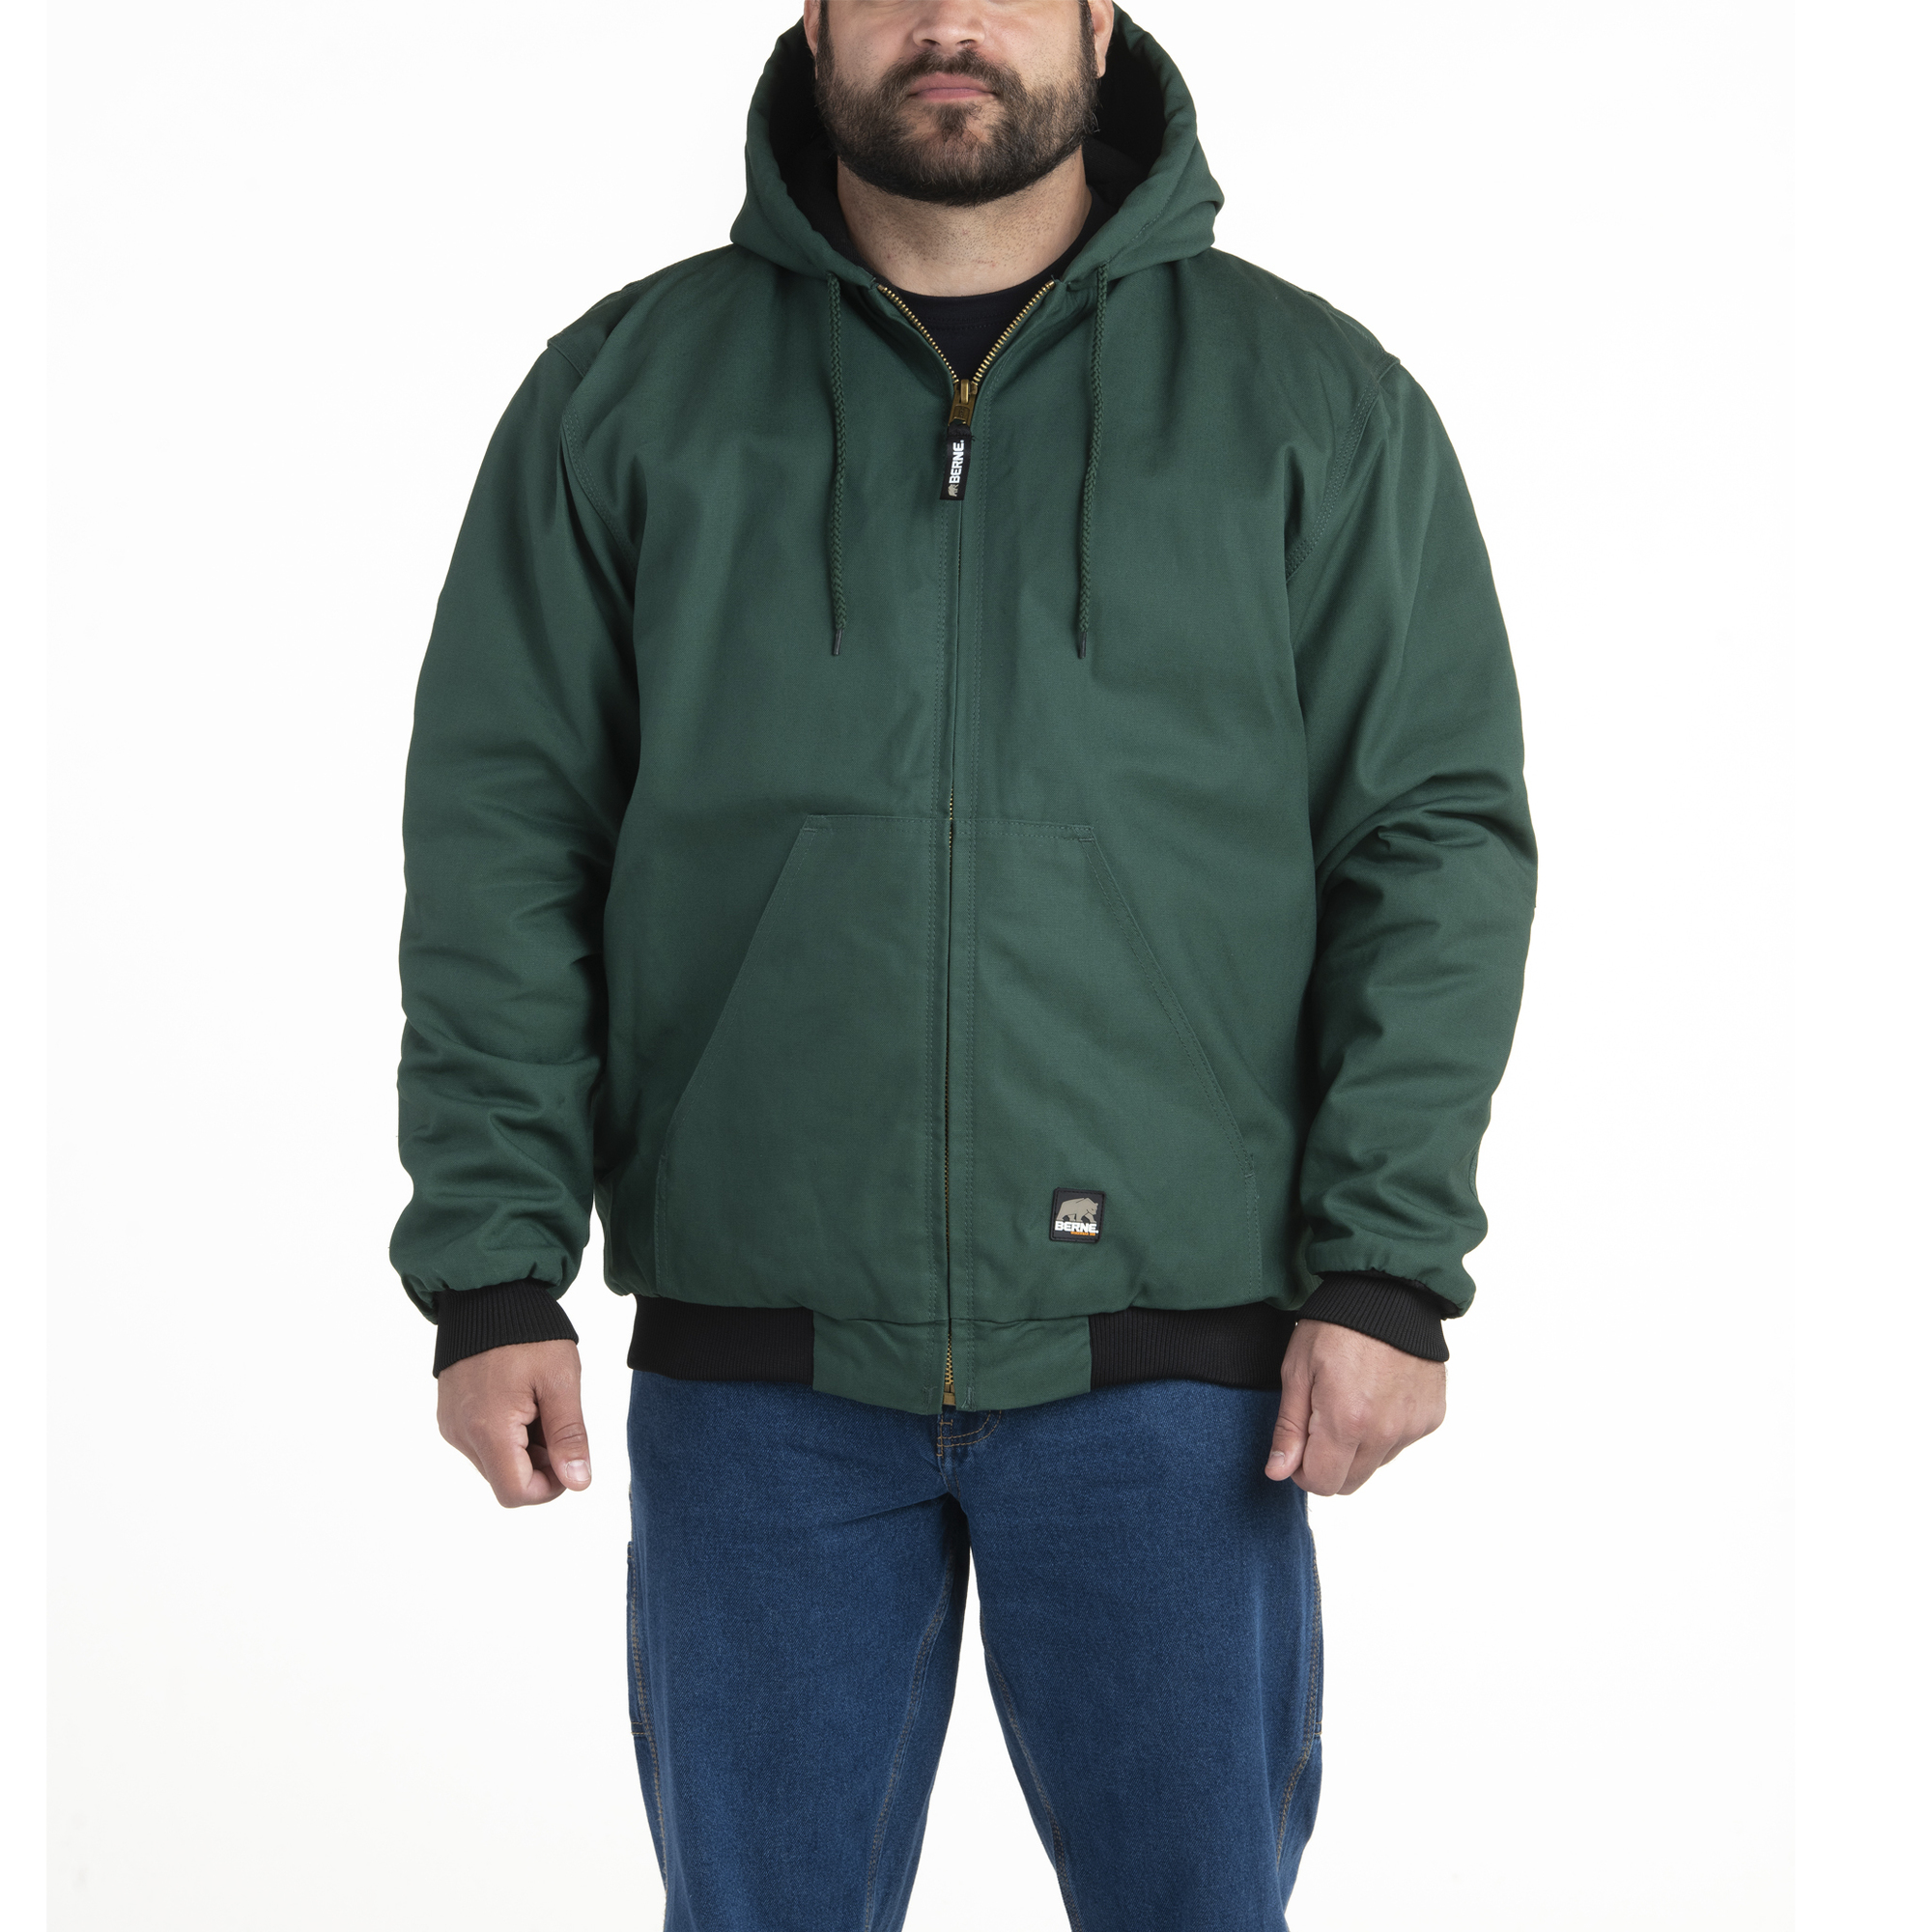 Berne Apparel, Heritage Hooded Jacket, Size 5XL, Color Green, Model HJ51